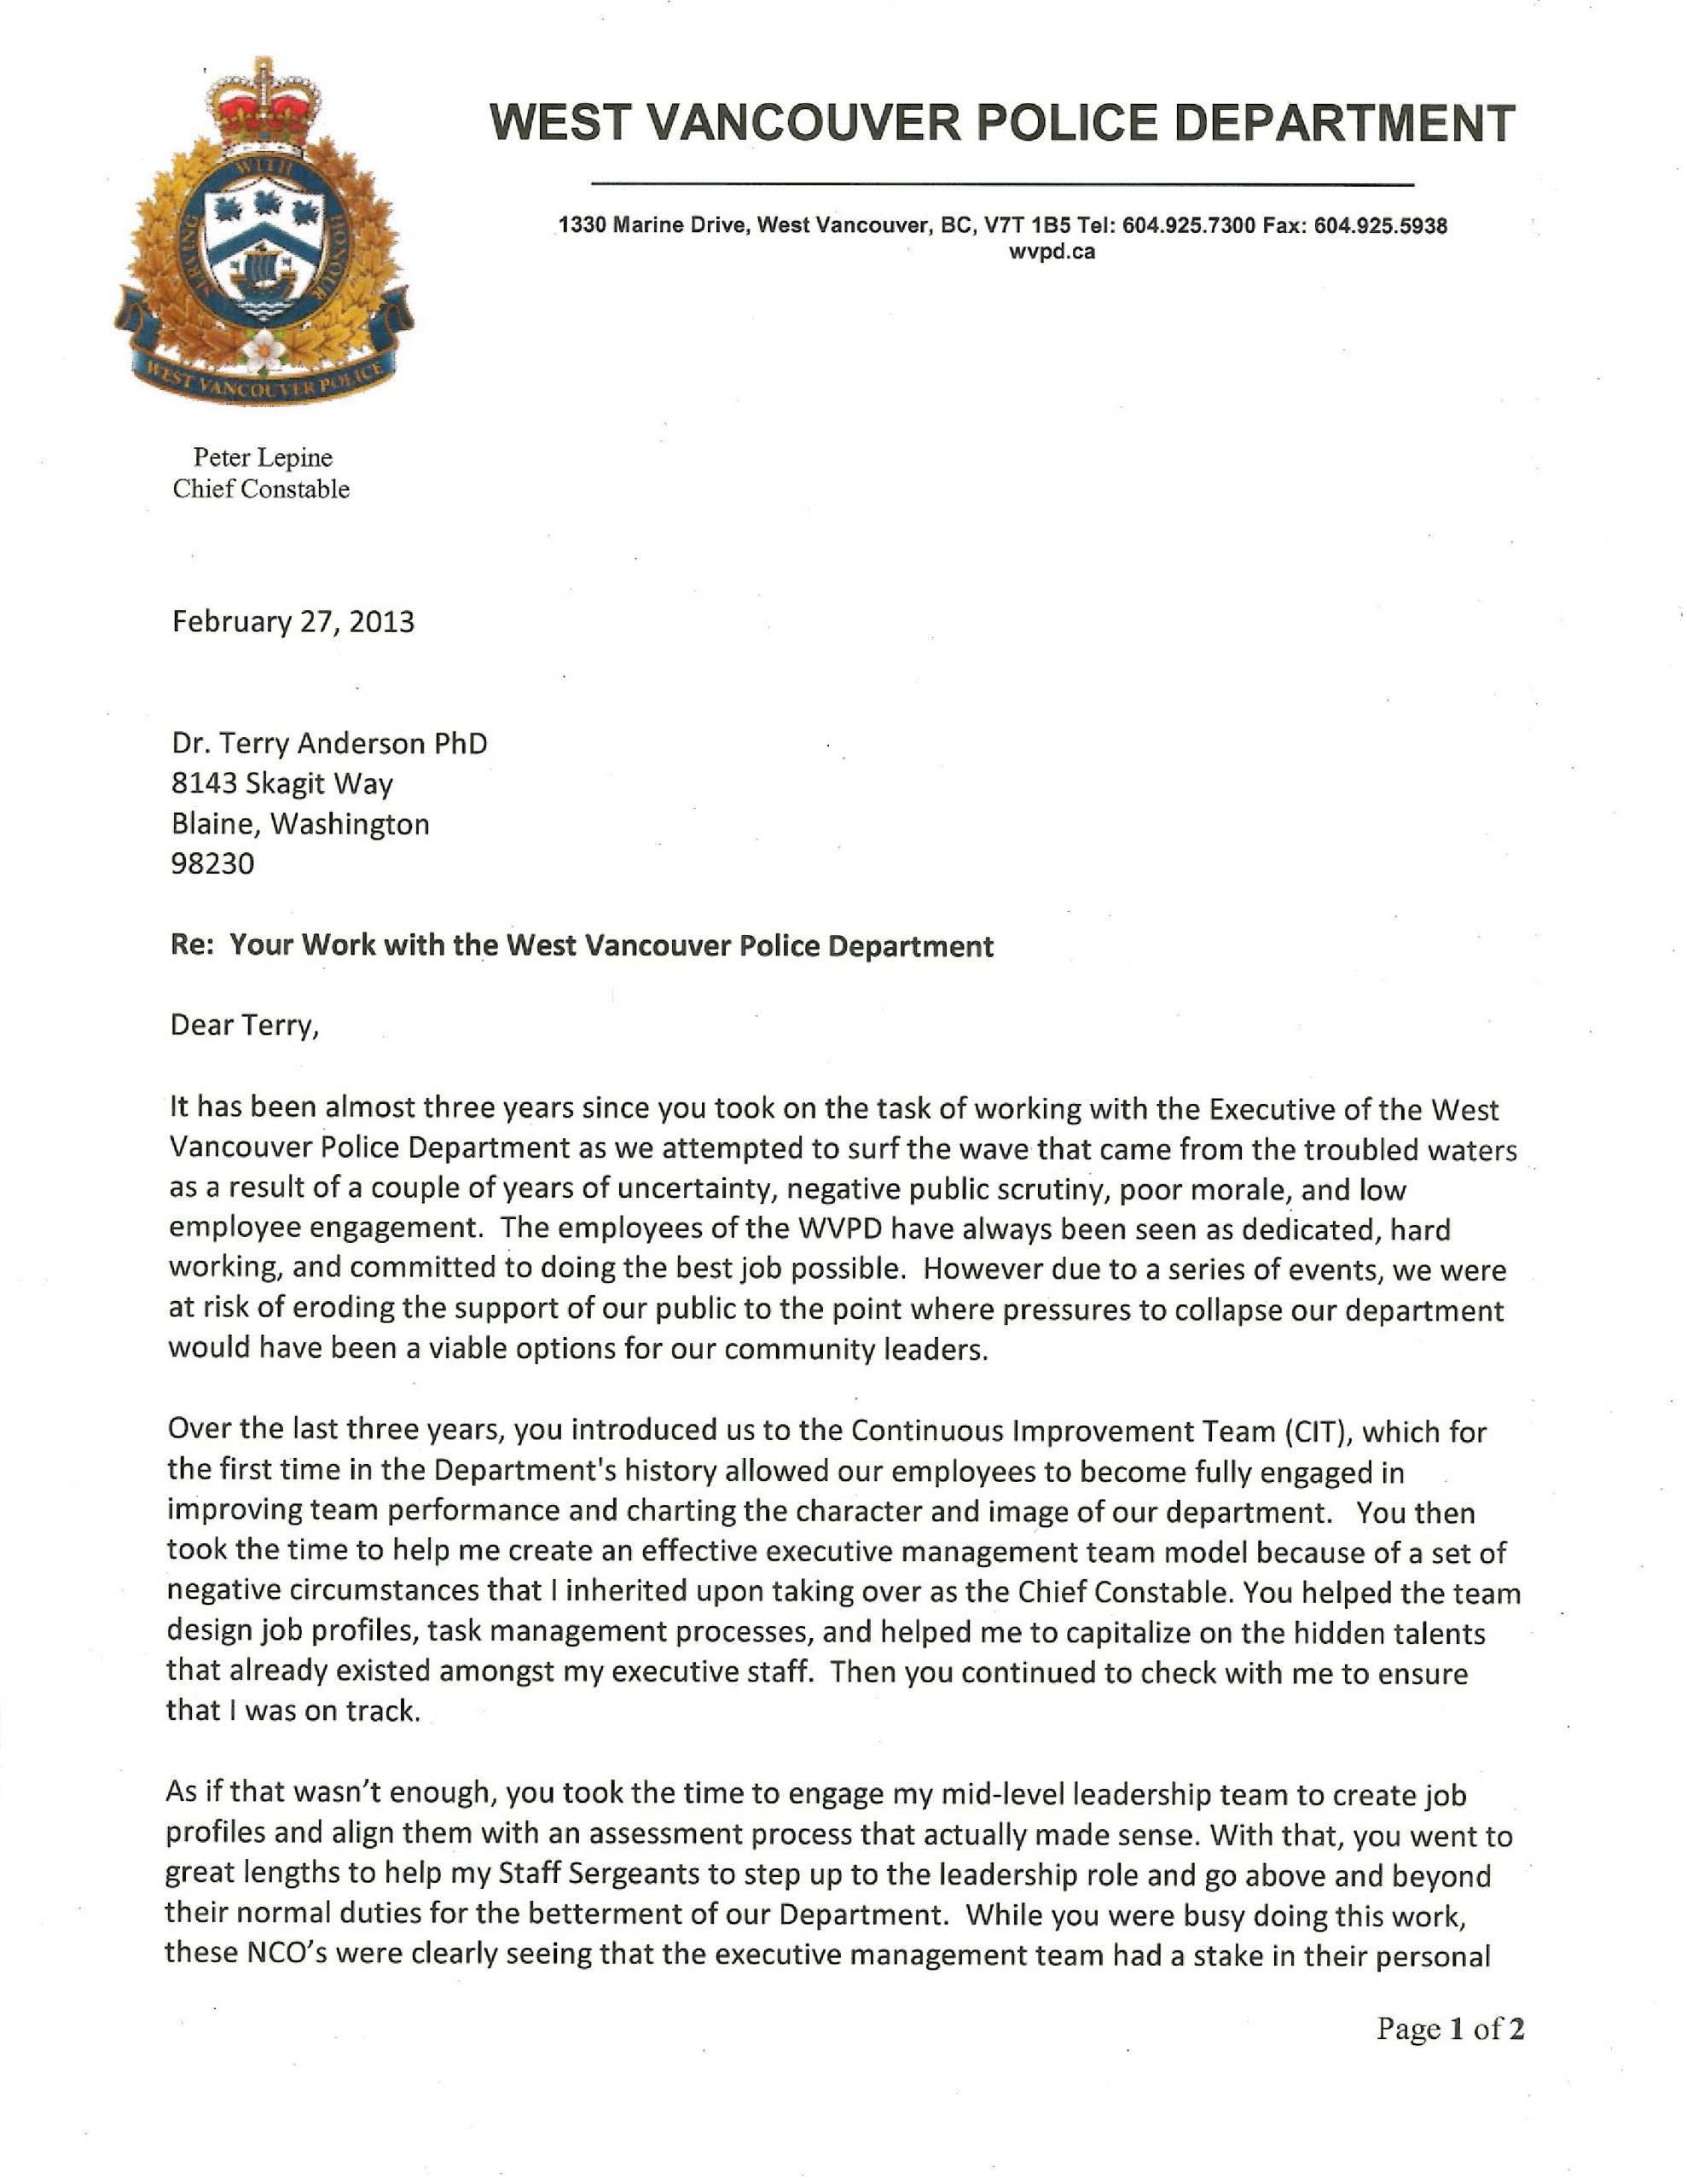 law enforcement cover letter